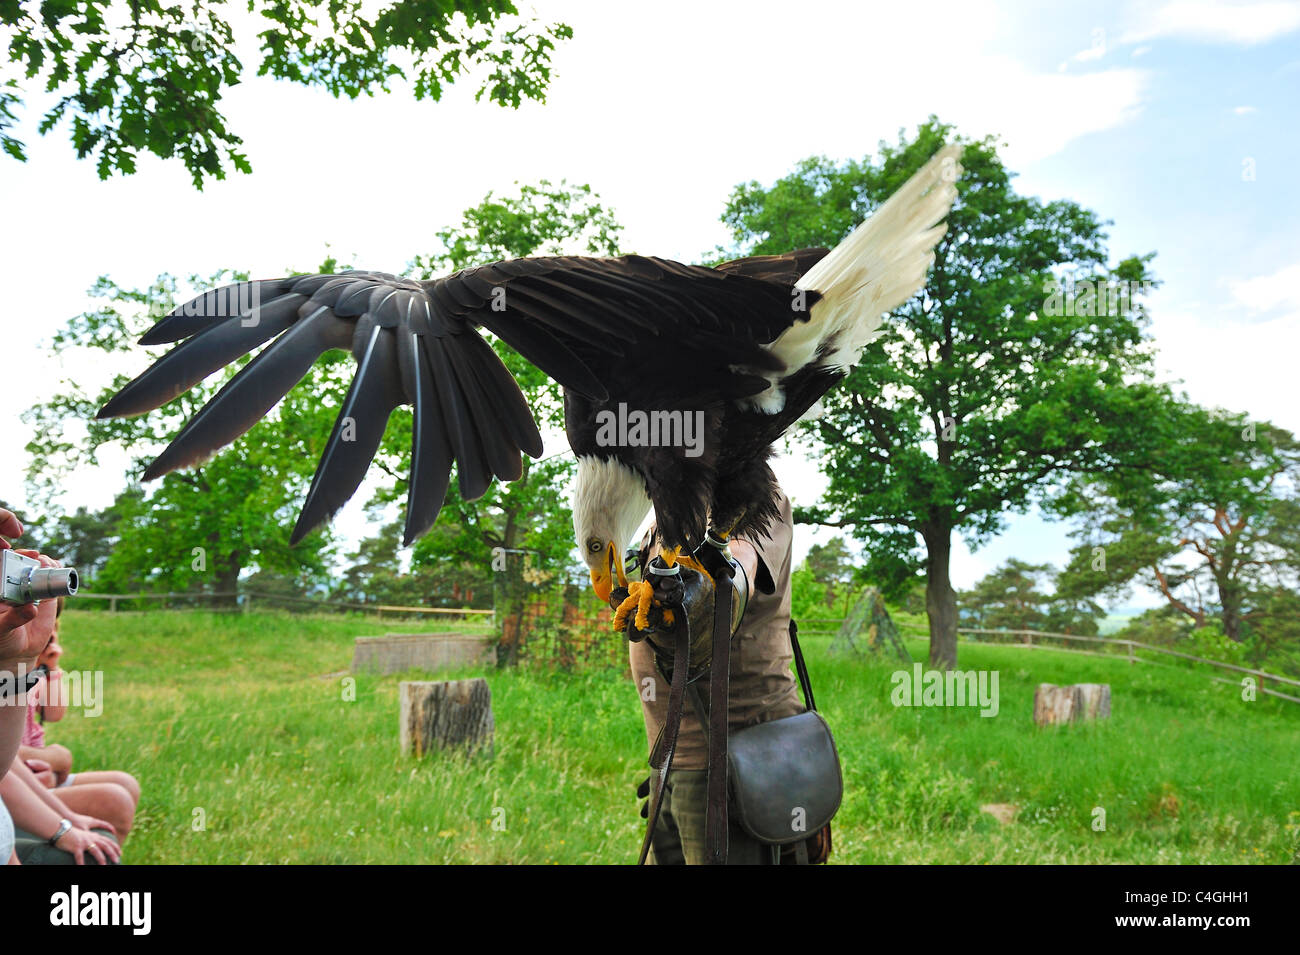 Falconer Mursa and Bald Eagle. Stock Photo